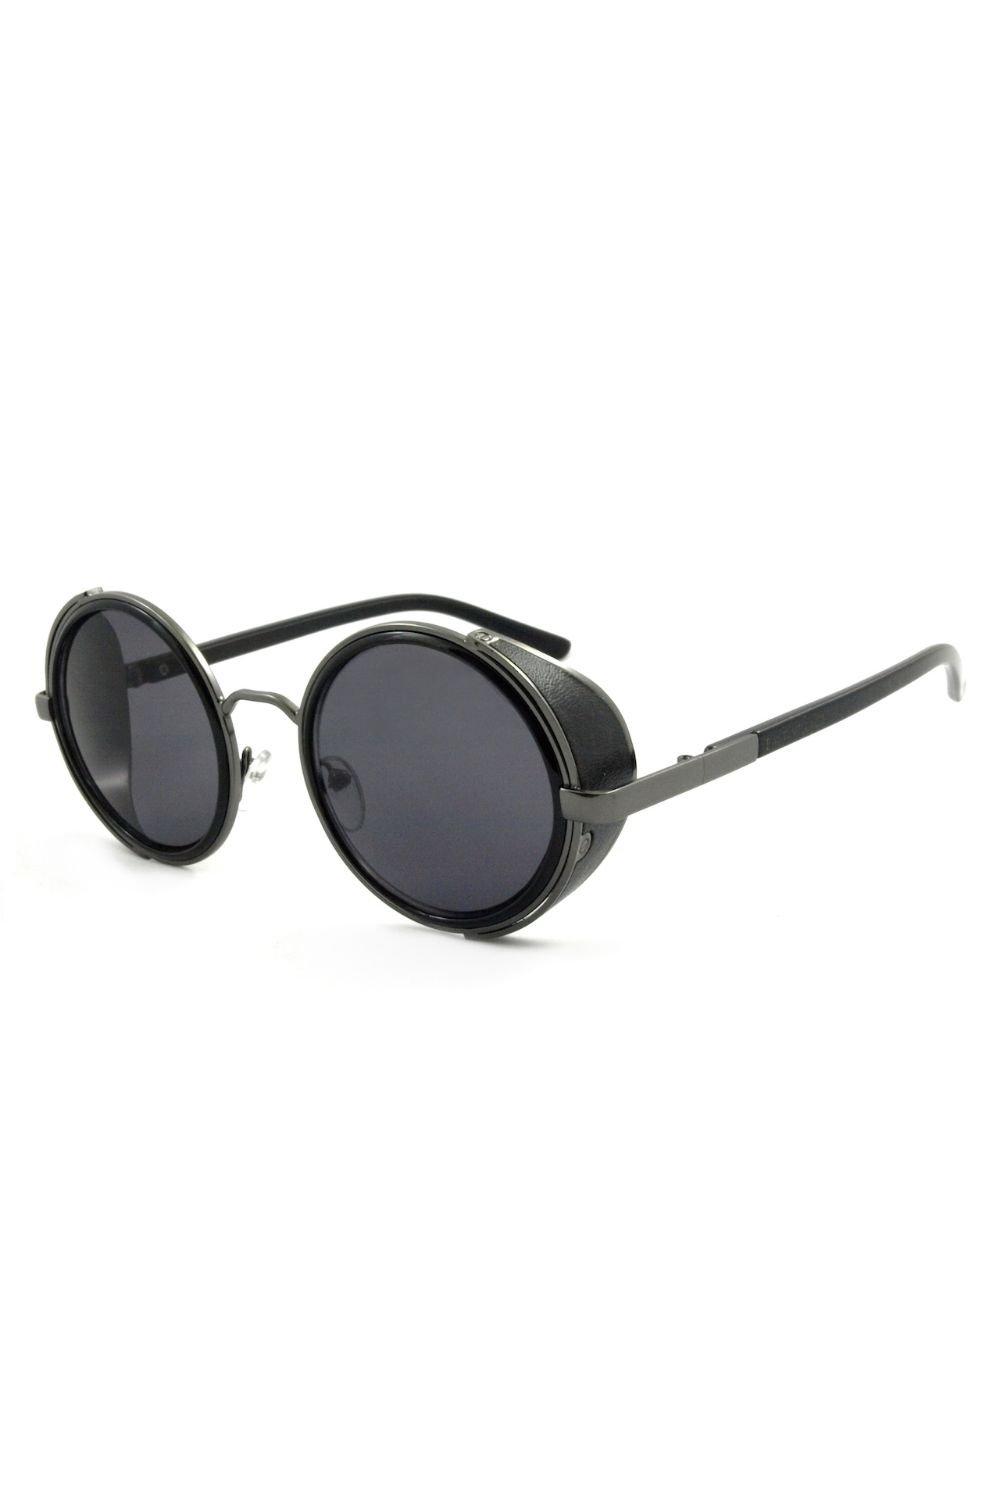 sharq village Круглые солнцезащитные очки Freeman East Village, черный